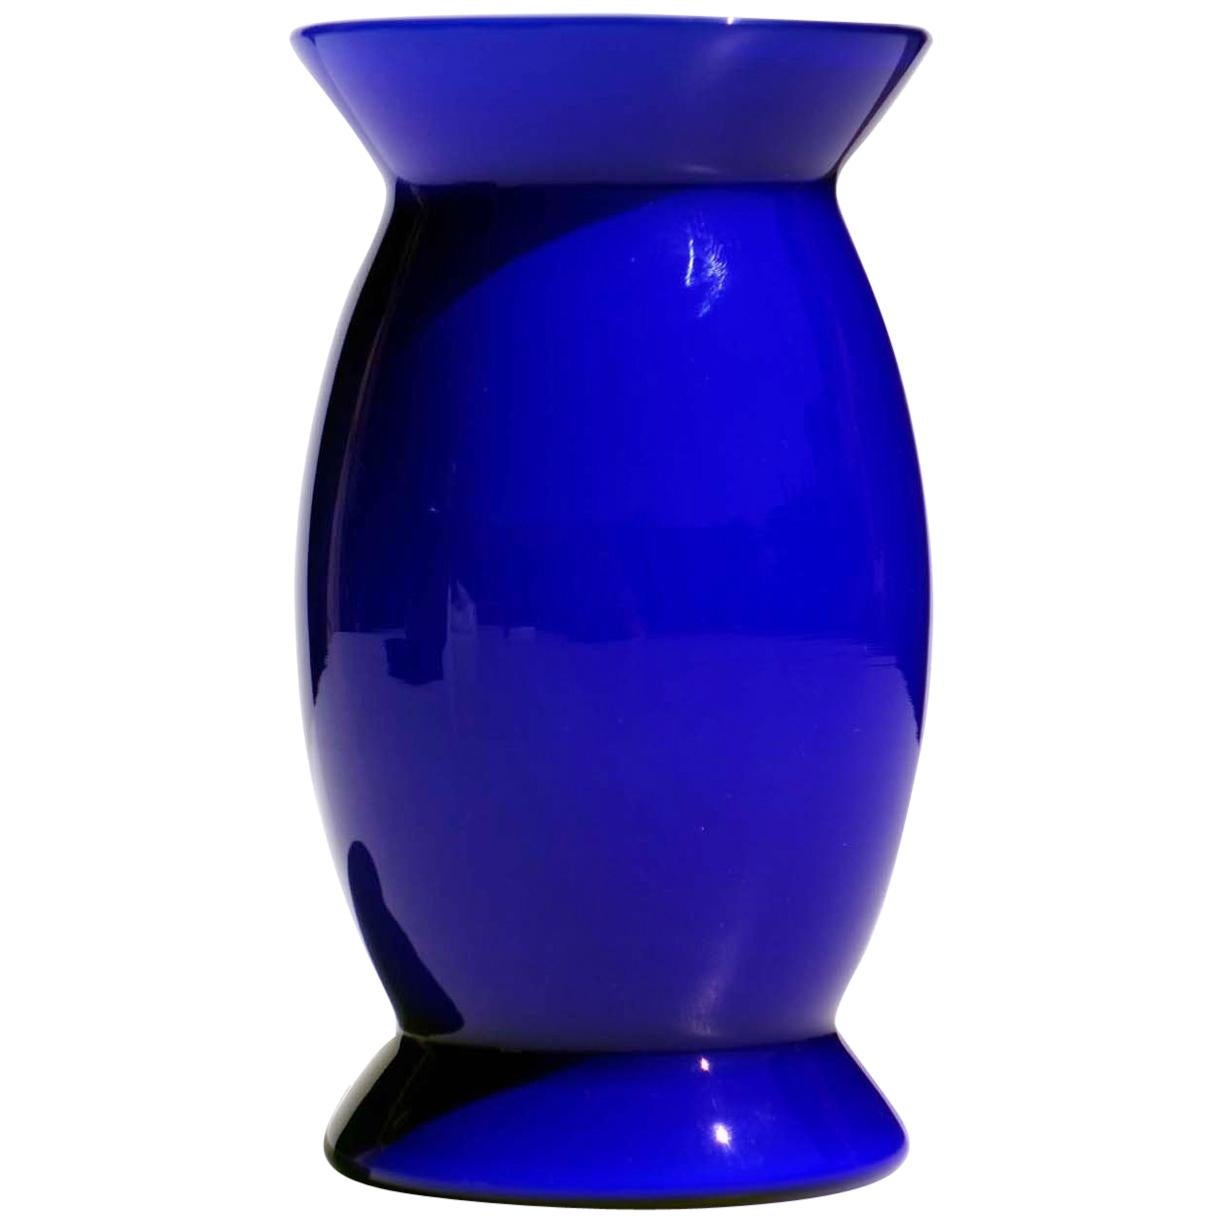 "Sidone" by Alessandro Mendini for Venini 1990s Murano Glass Vase